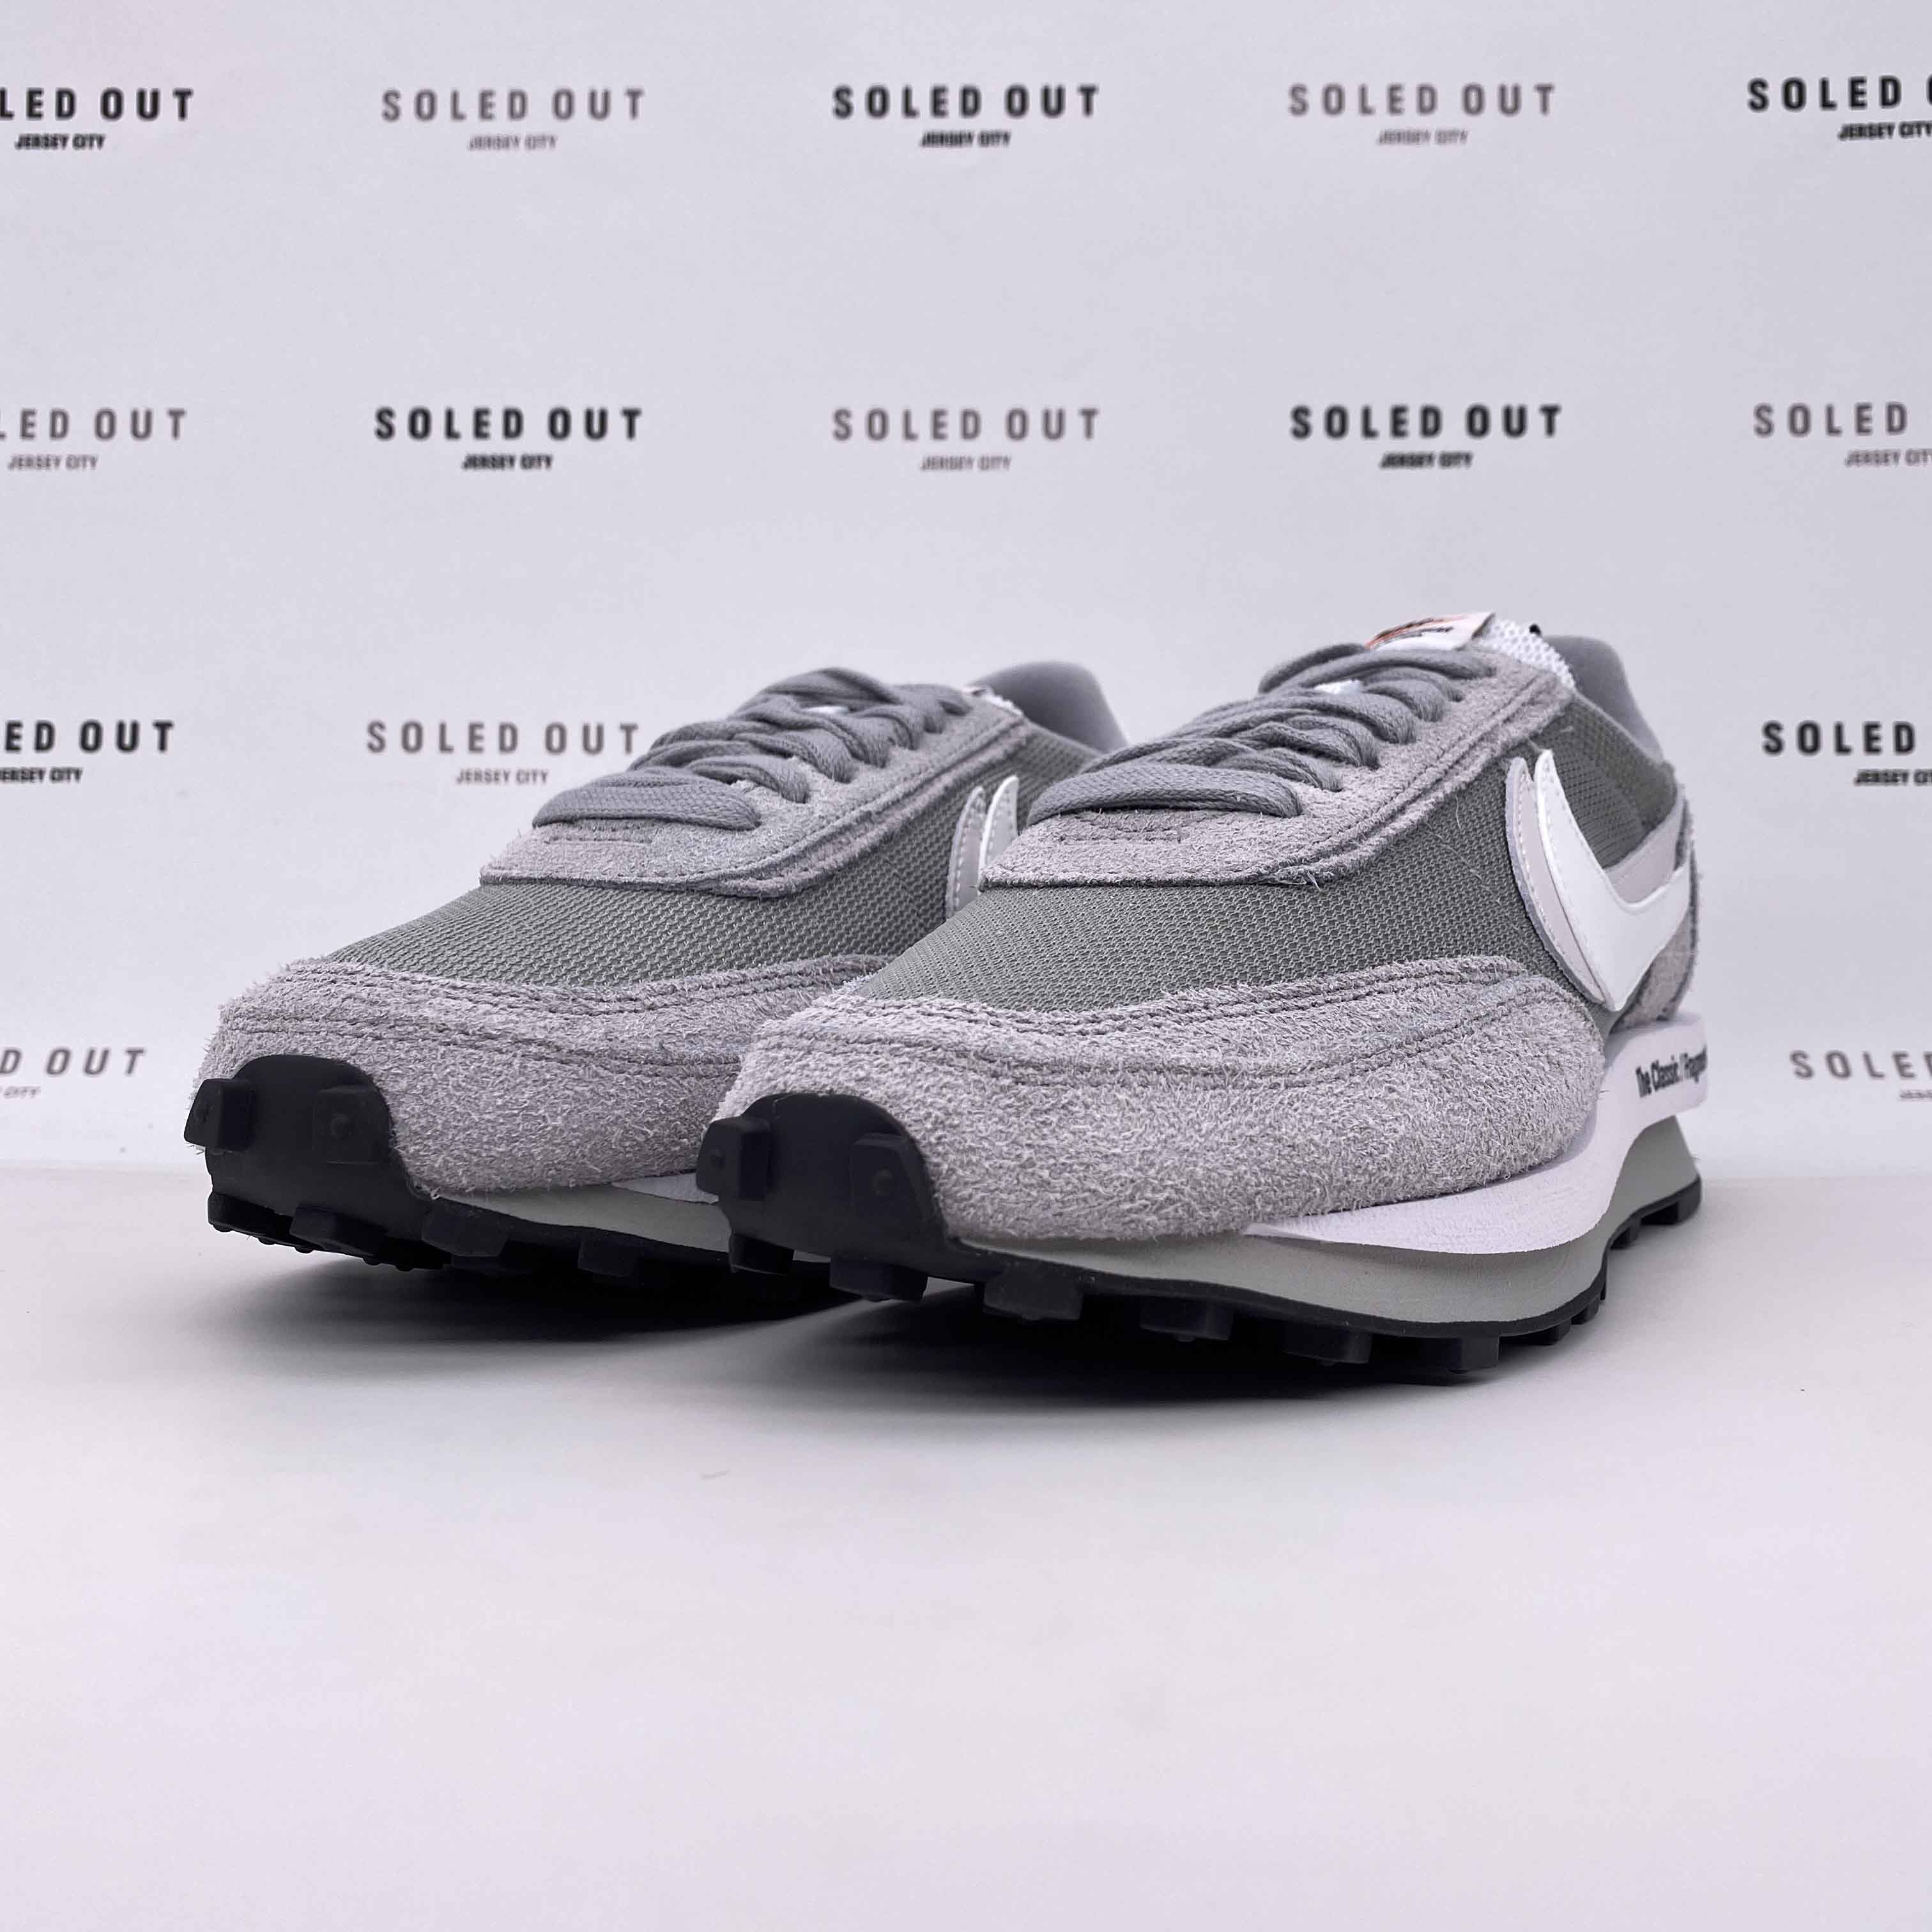 Nike LD WAFFLE / Sacai "Fragment Grey" 2021 New Size 7.5